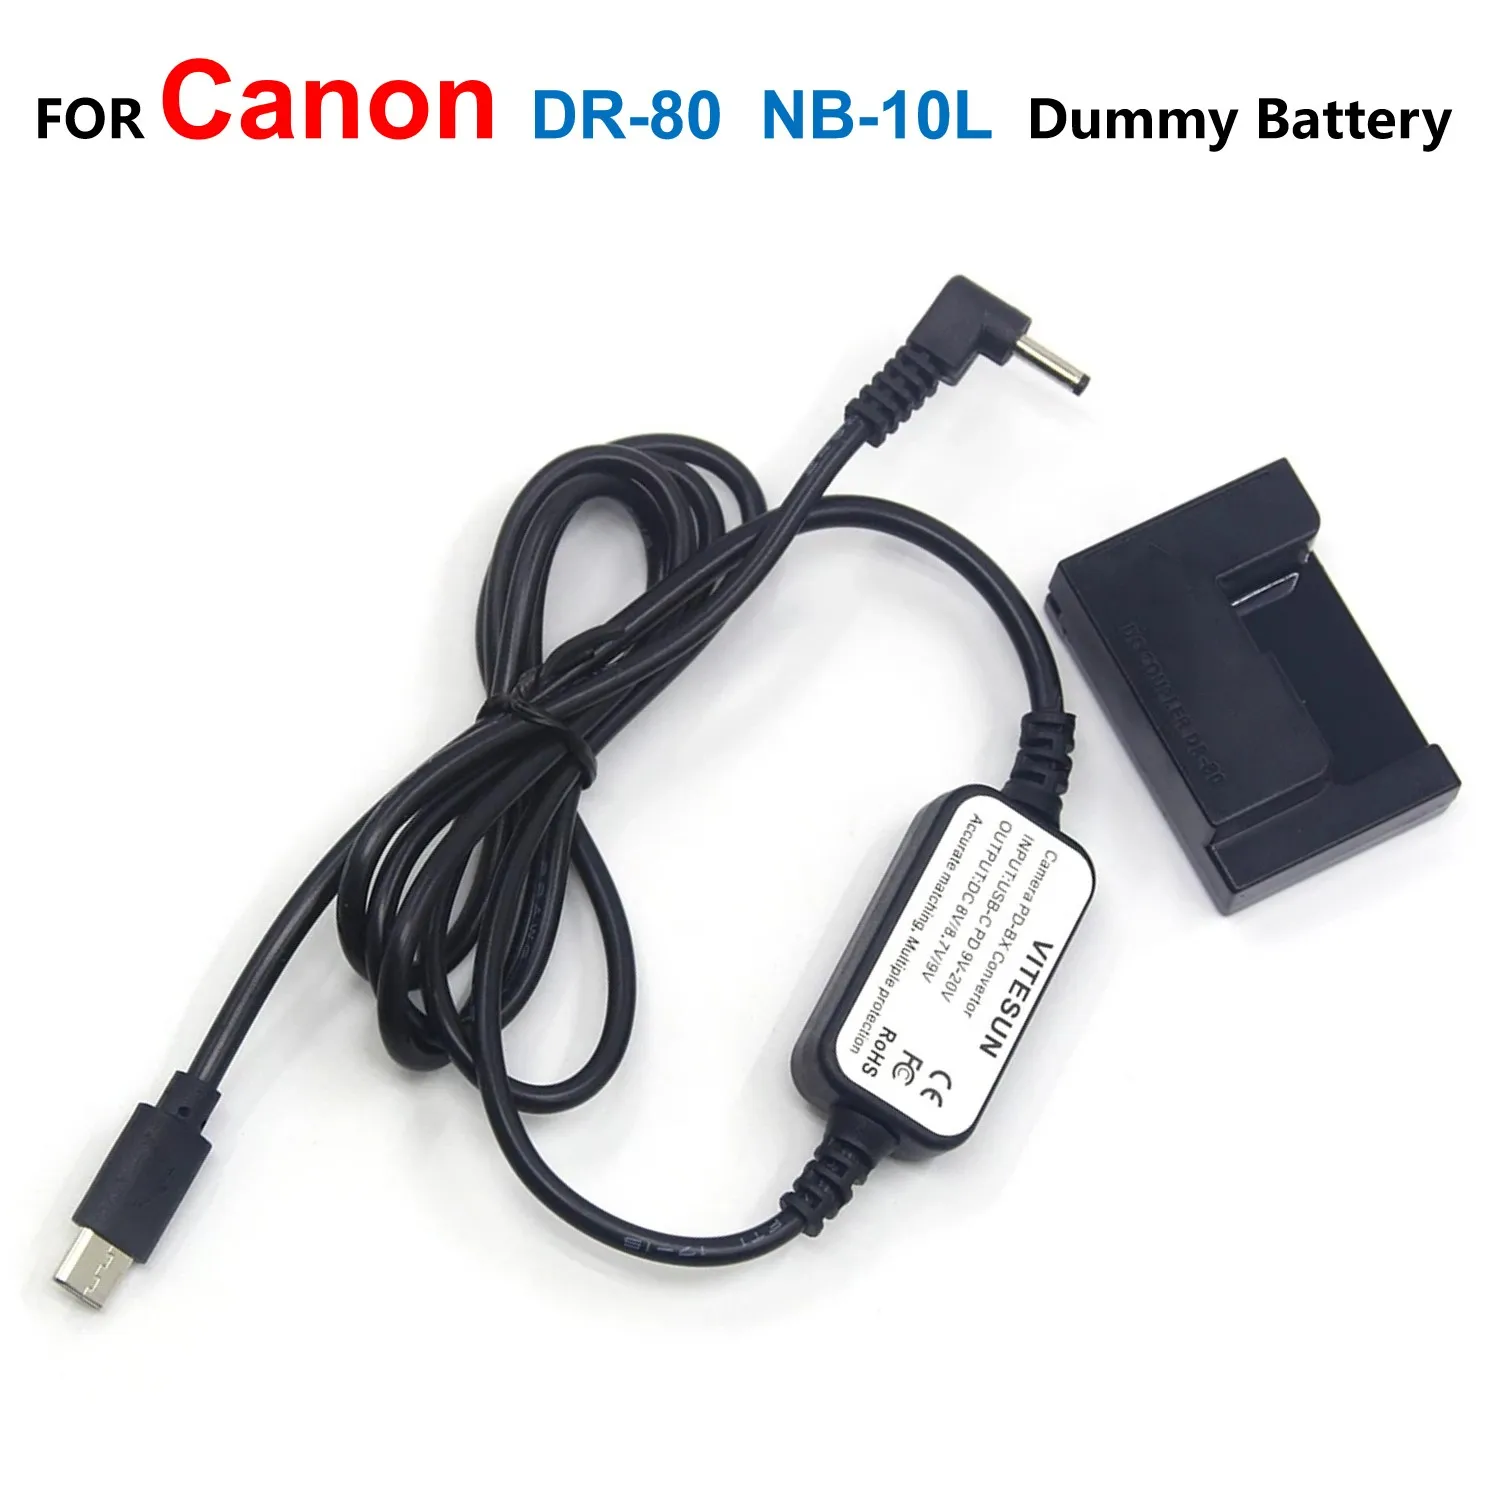 

DR-80 DC Coupler NB-10L Dummy Battery+USB Type-C Power Bank Cable For Canon G1X G3X G15 G16 SX40 SX50 SX60 Powershot SX60HS